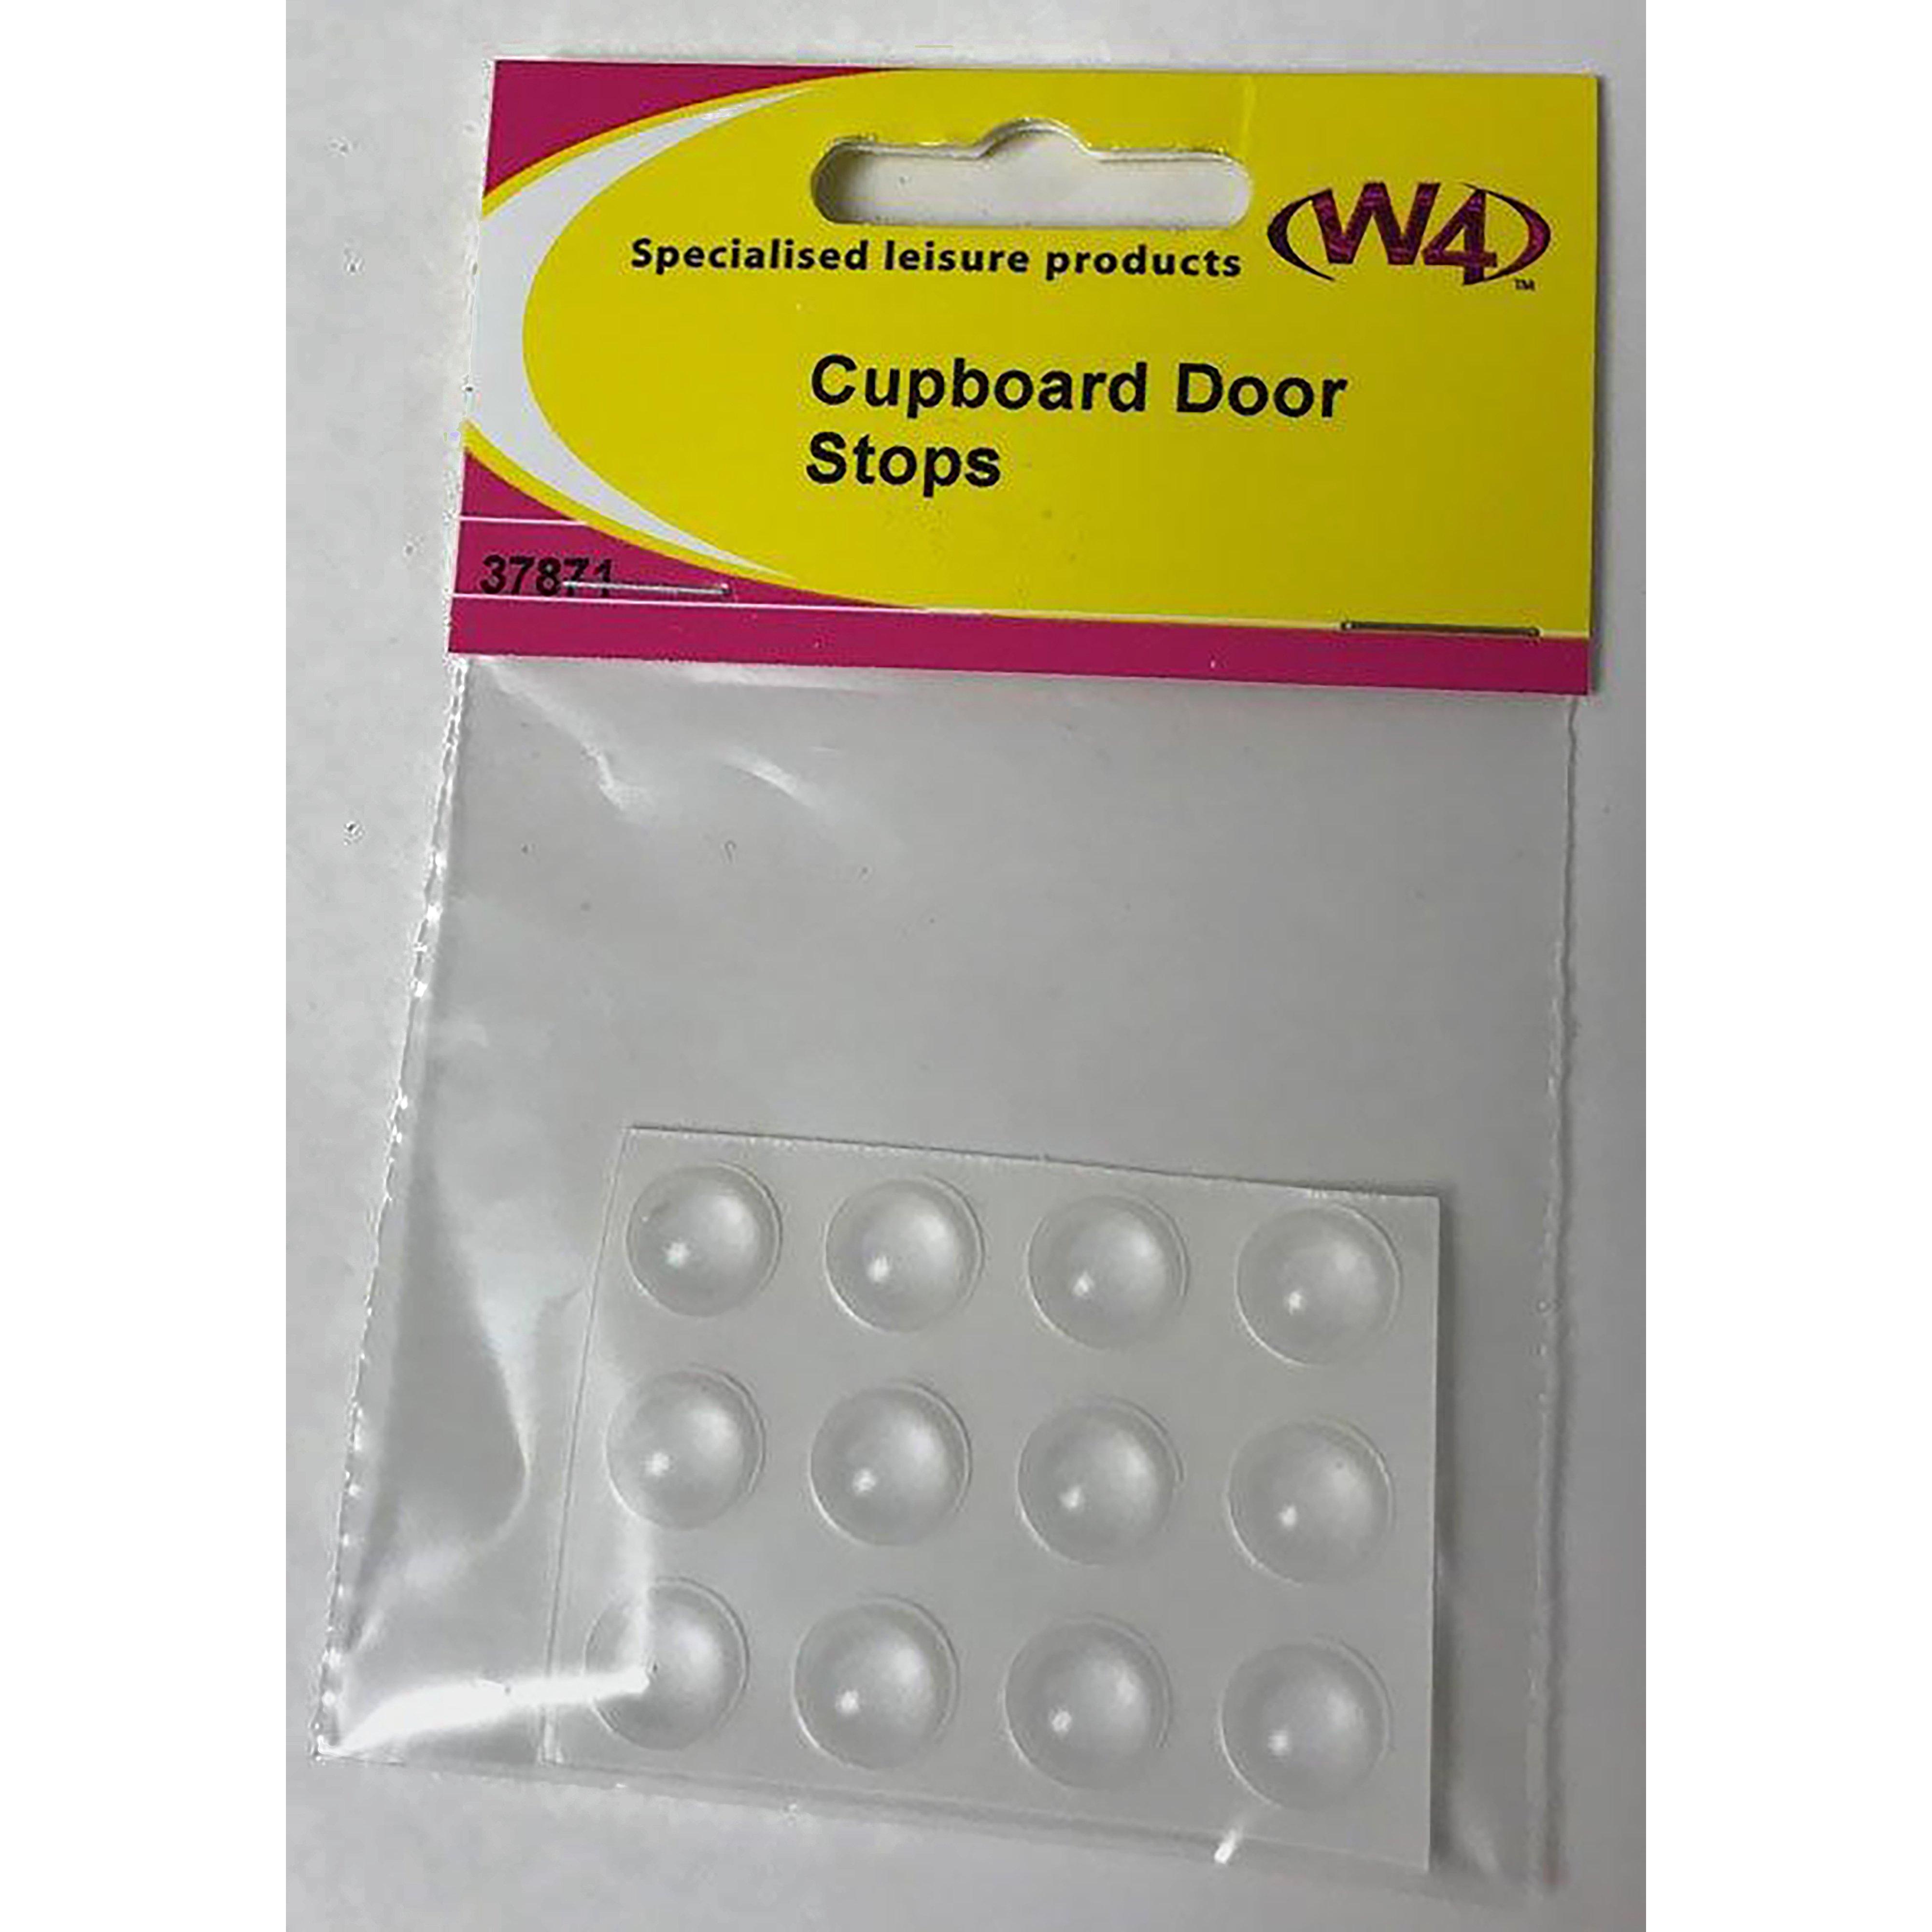 W4 Cupboard Door Stops (12 Pack) Review